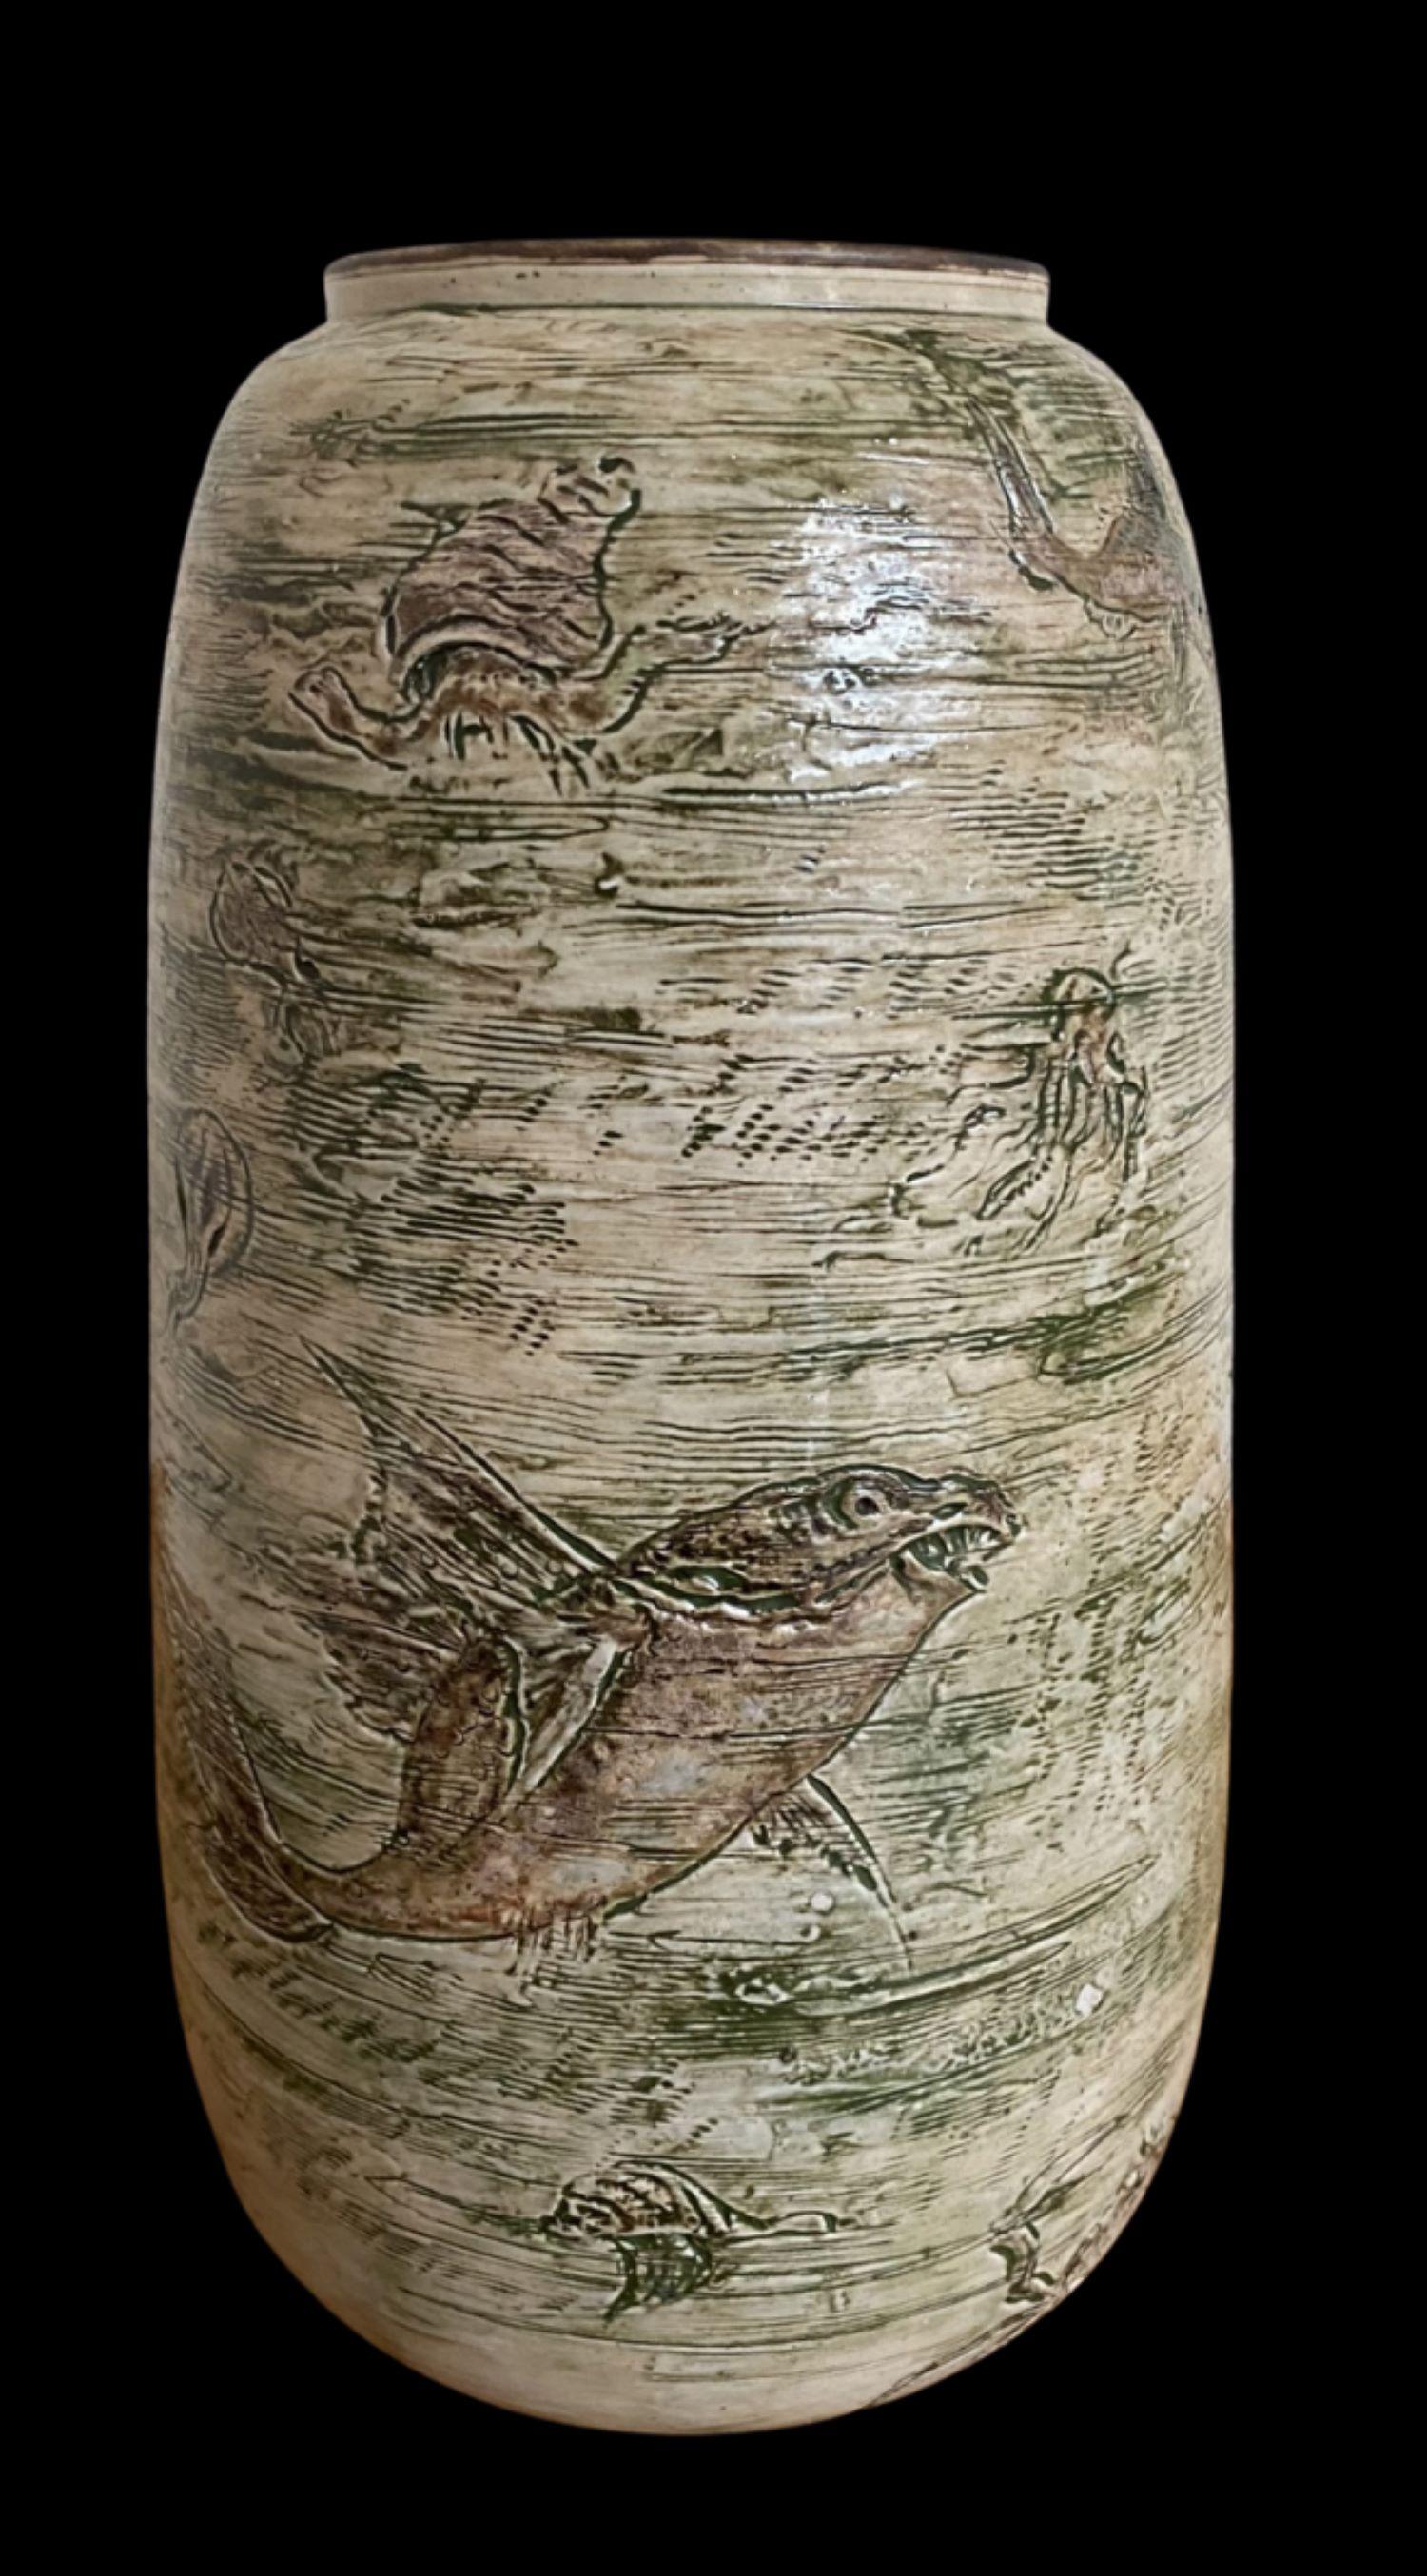 5095
Vase de Martin Brothers décoré de poissons grotesques et comiques, de crabes, d'anguilles et de calamars. 
Petite fritte de glaçure sur le bord.
Daté de 1906.